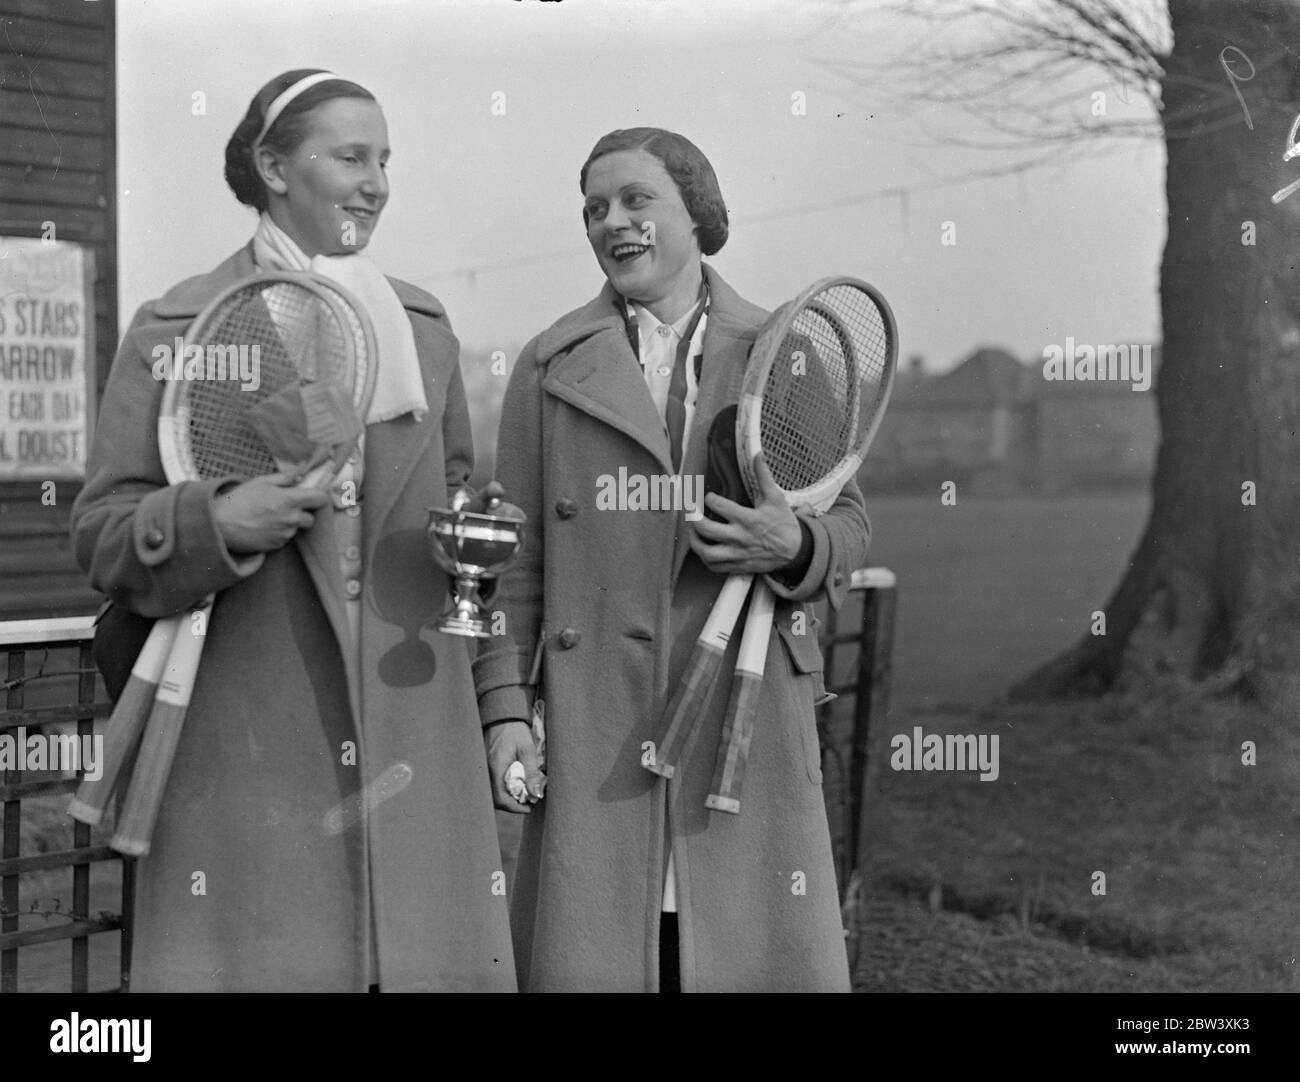 Mlle Dorothy Round a battu Mlle Mary Heeley dans la finale des singles féminins au tournoi de tennis du Herga Club, Harrow. Le score était de 4-6 6-3 6-3 photos montre Miss Round (tasse de maintien) avec Miss Heeley après leur match. 27 mars 1937 Banque D'Images